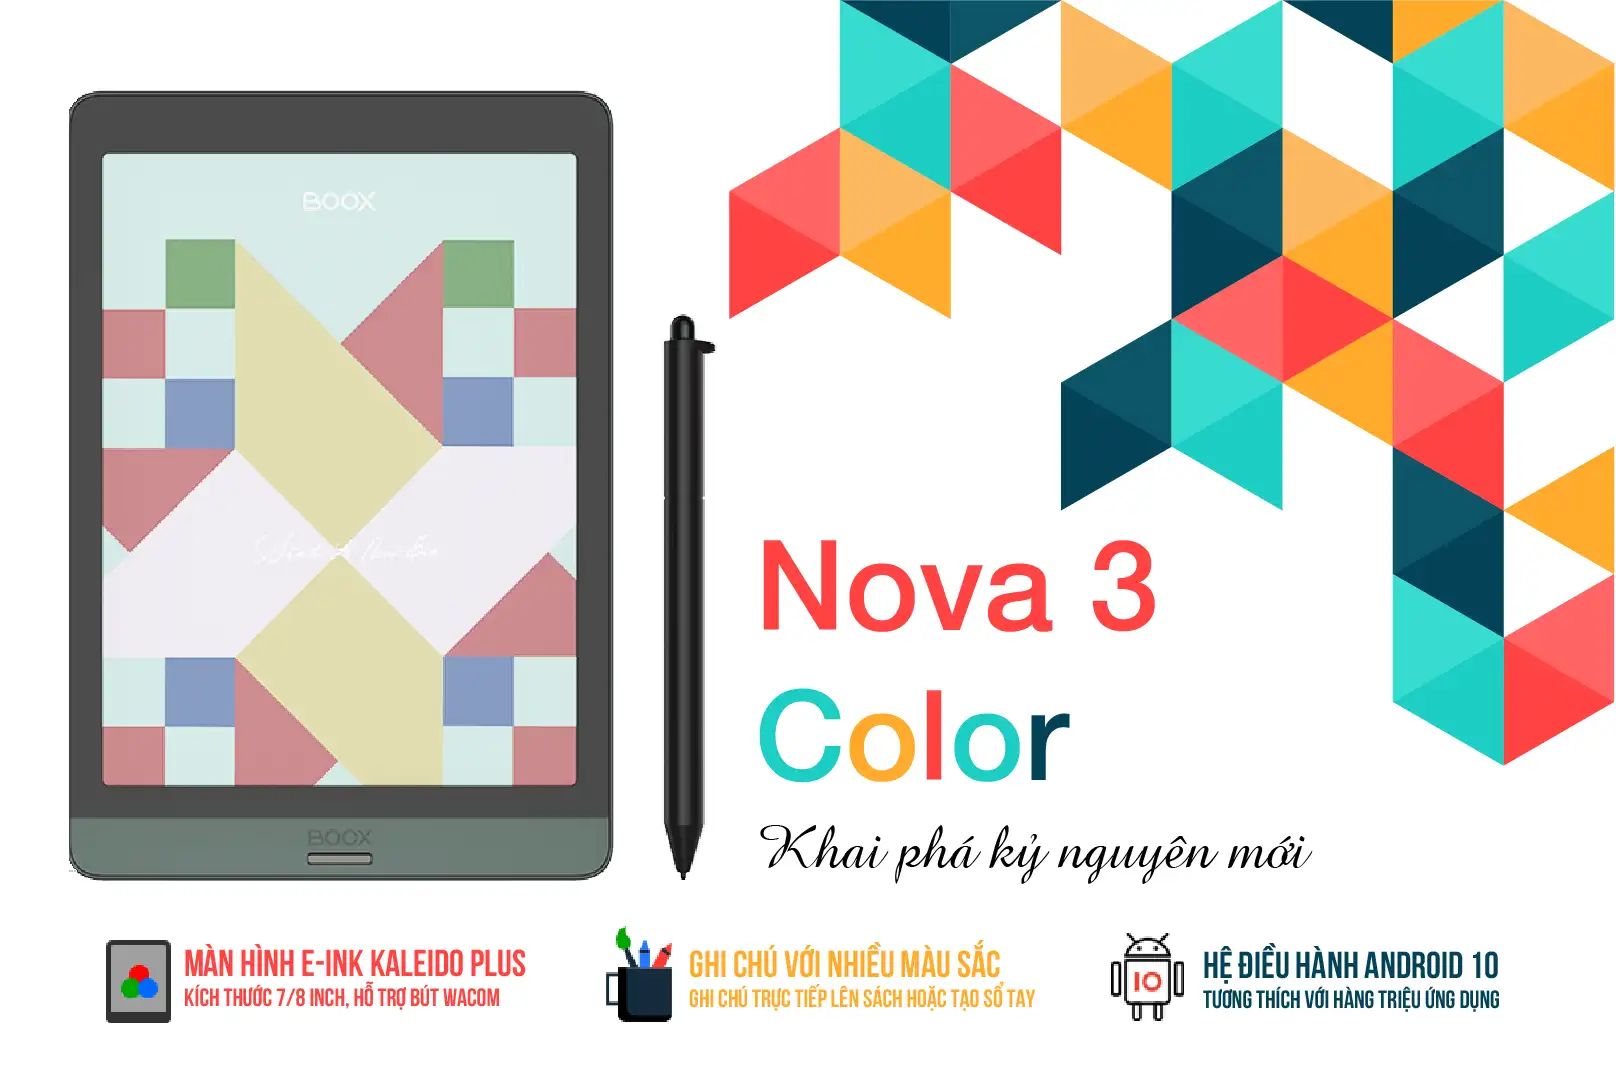 Nova 3 Color